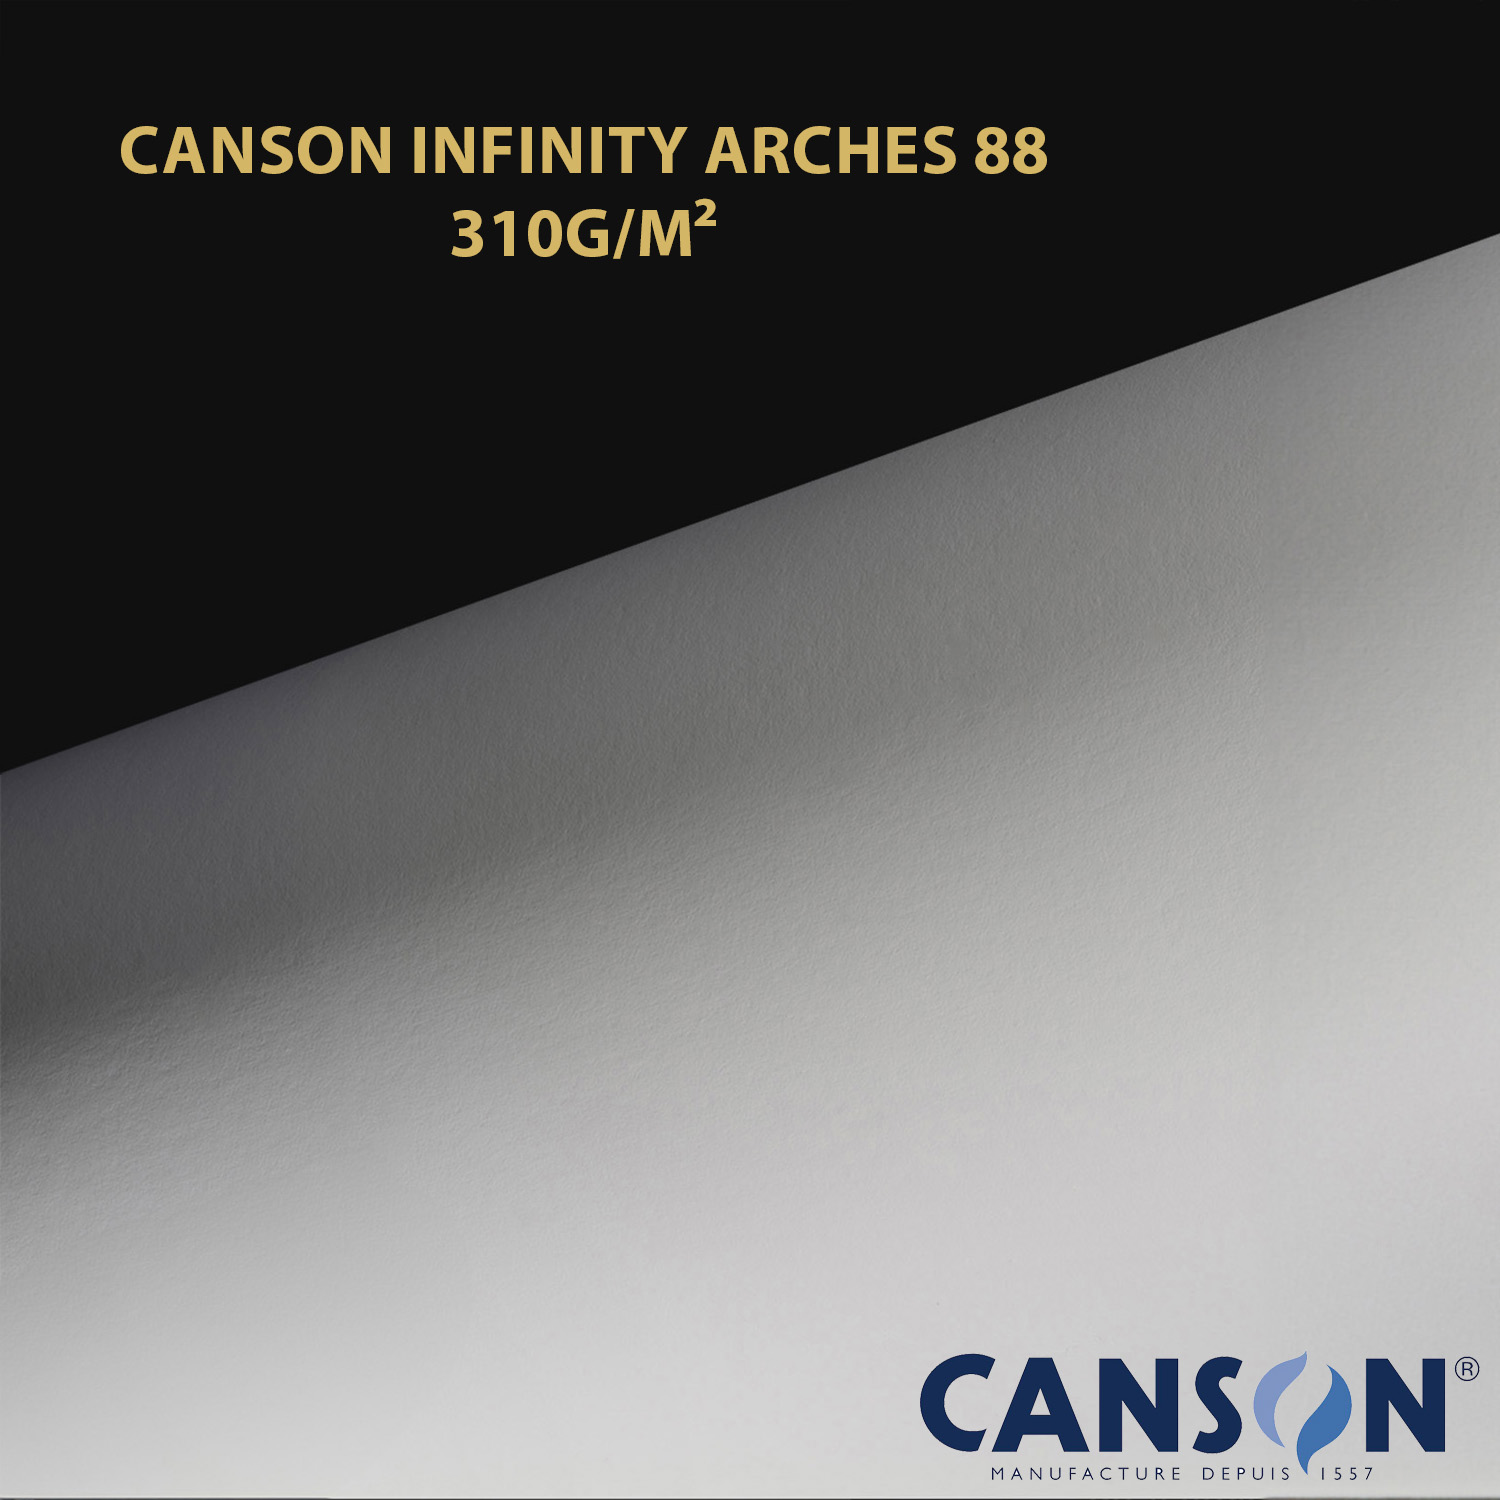 Impression et tirage Fineart pigmentaire sur papier Canson Infinity Arches 88 310 à Montpellier